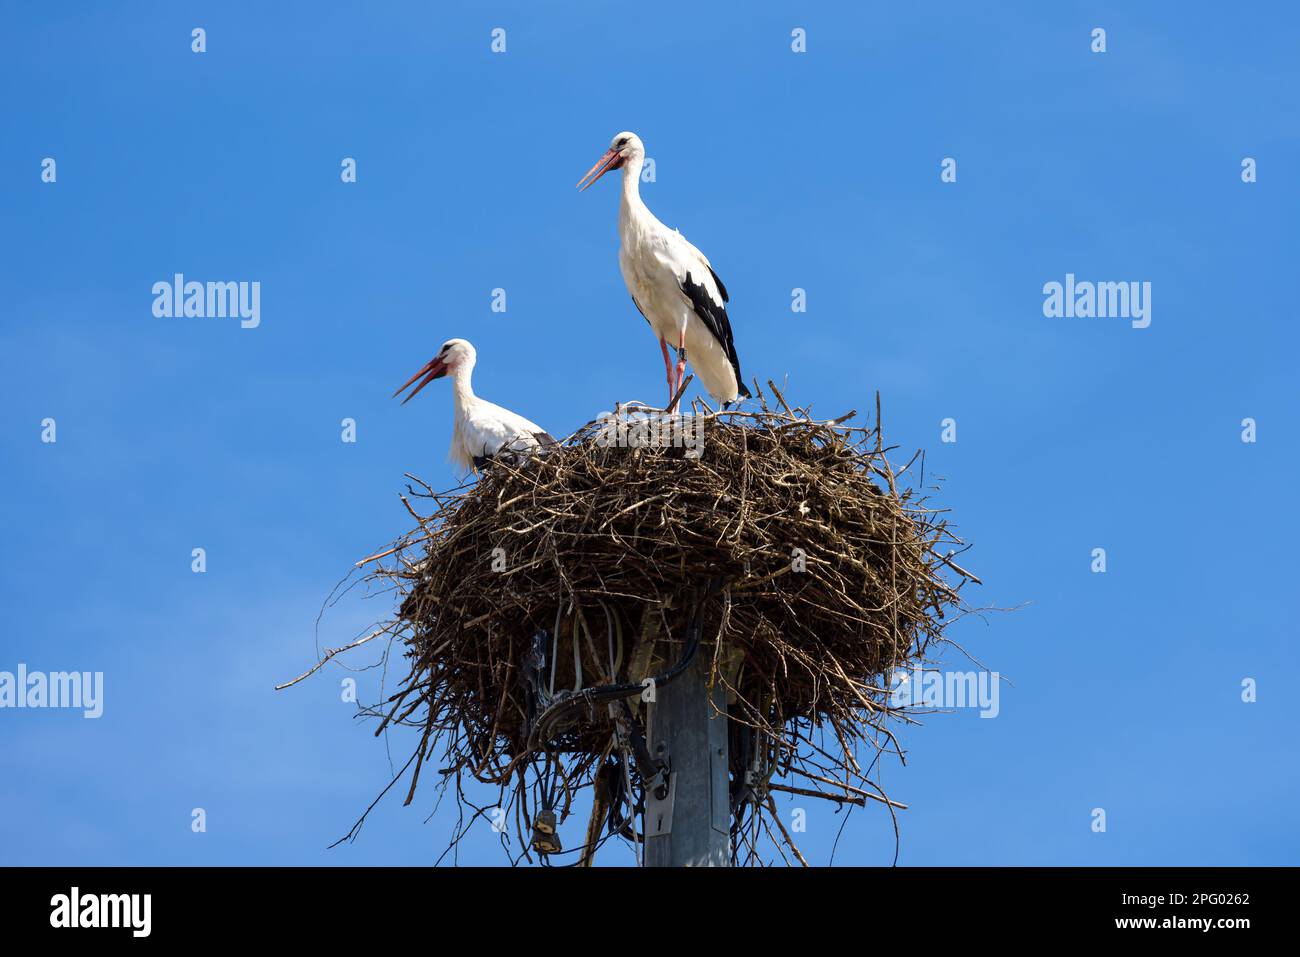 Störche auf dem Nest am Himmel, ein paar weiße Vögel stehen im Sommer zu Hause. Wildstorch-Familie, die in einem Dorf oder einer Stadt lebt. Thema der Natur, wi Stockfoto